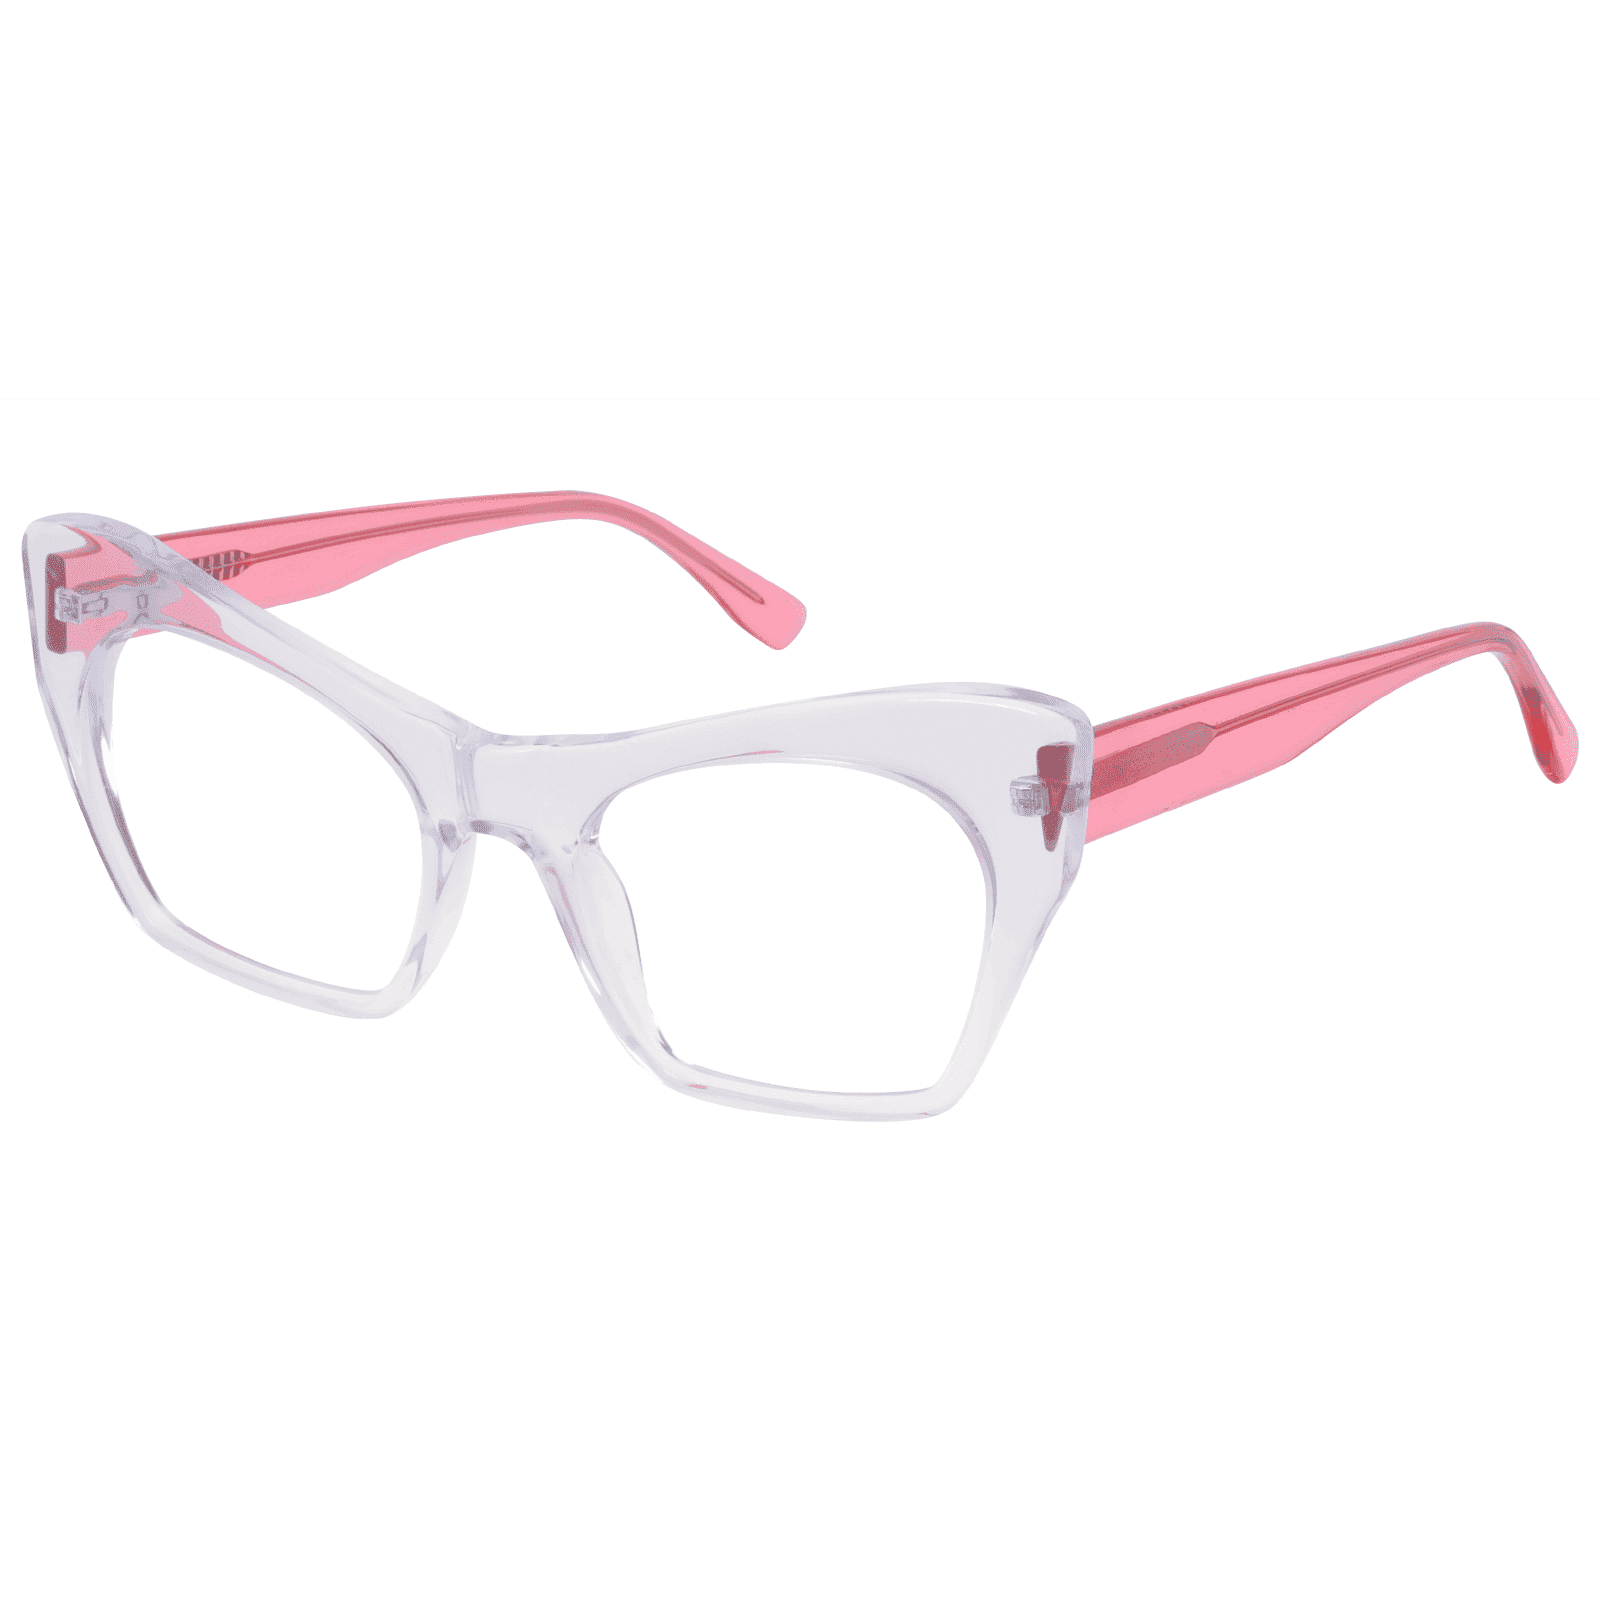 Amphitrite - Cat-eye Transparent-Rose Reading Glasses for Women